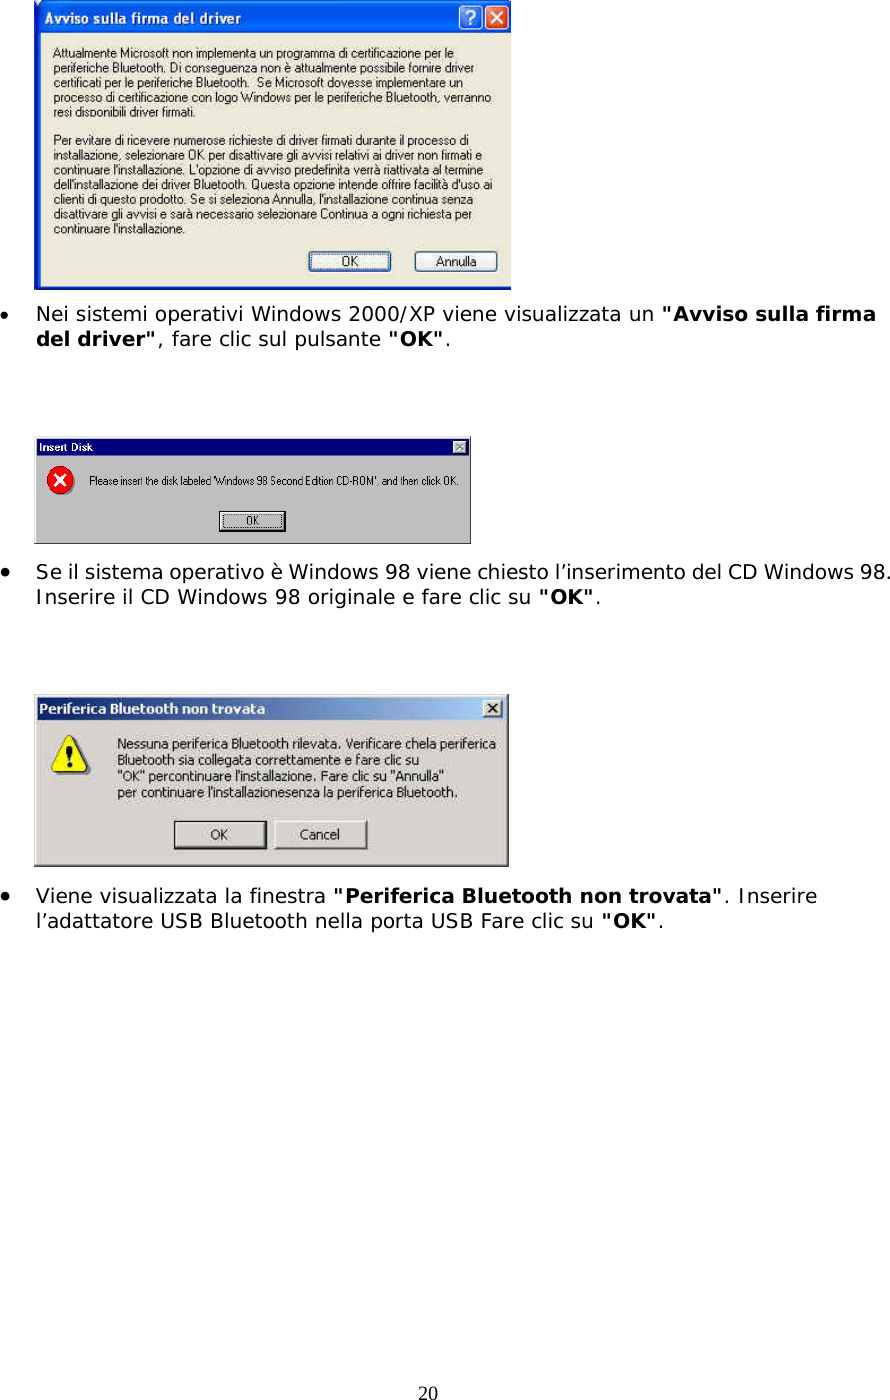 20  •  Nei sistemi operativi Windows 2000/XP viene visualizzata un &quot;Avviso sulla firma del driver&quot;, fare clic sul pulsante &quot;OK&quot;.    •  Se il sistema operativo è Windows 98 viene chiesto l’inserimento del CD Windows 98. Inserire il CD Windows 98 originale e fare clic su &quot;OK&quot;.    •  Viene visualizzata la finestra &quot;Periferica Bluetooth non trovata&quot;. Inserire l’adattatore USB Bluetooth nella porta USB Fare clic su &quot;OK&quot;. 